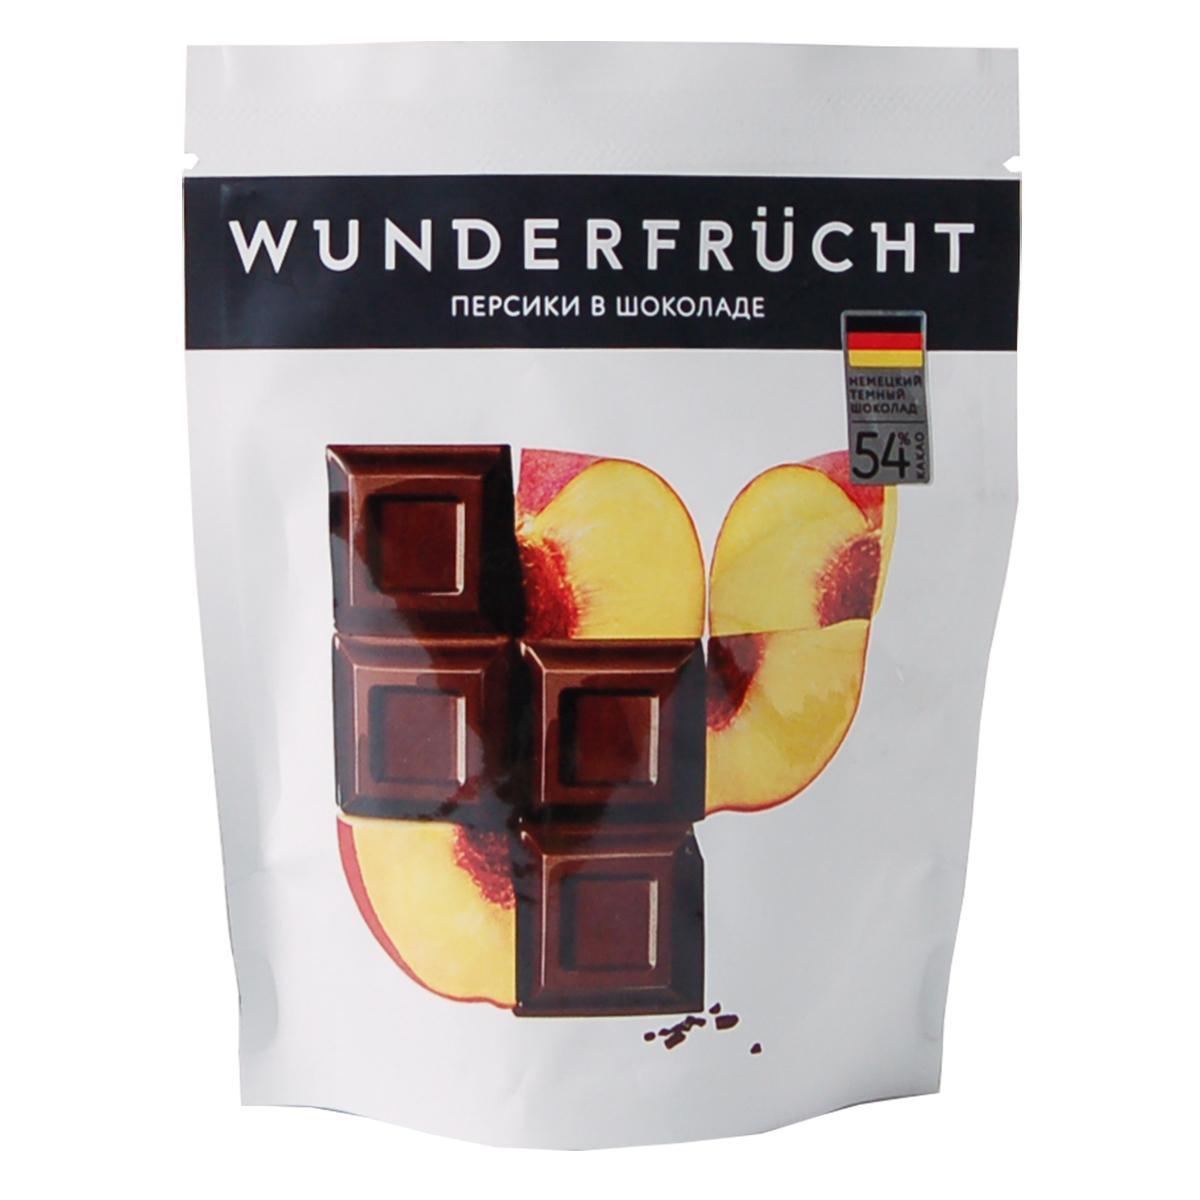 Конфеты WUNDERFRUCHT Персик в темном шоколаде 54%, 75 гр., флоу-пак